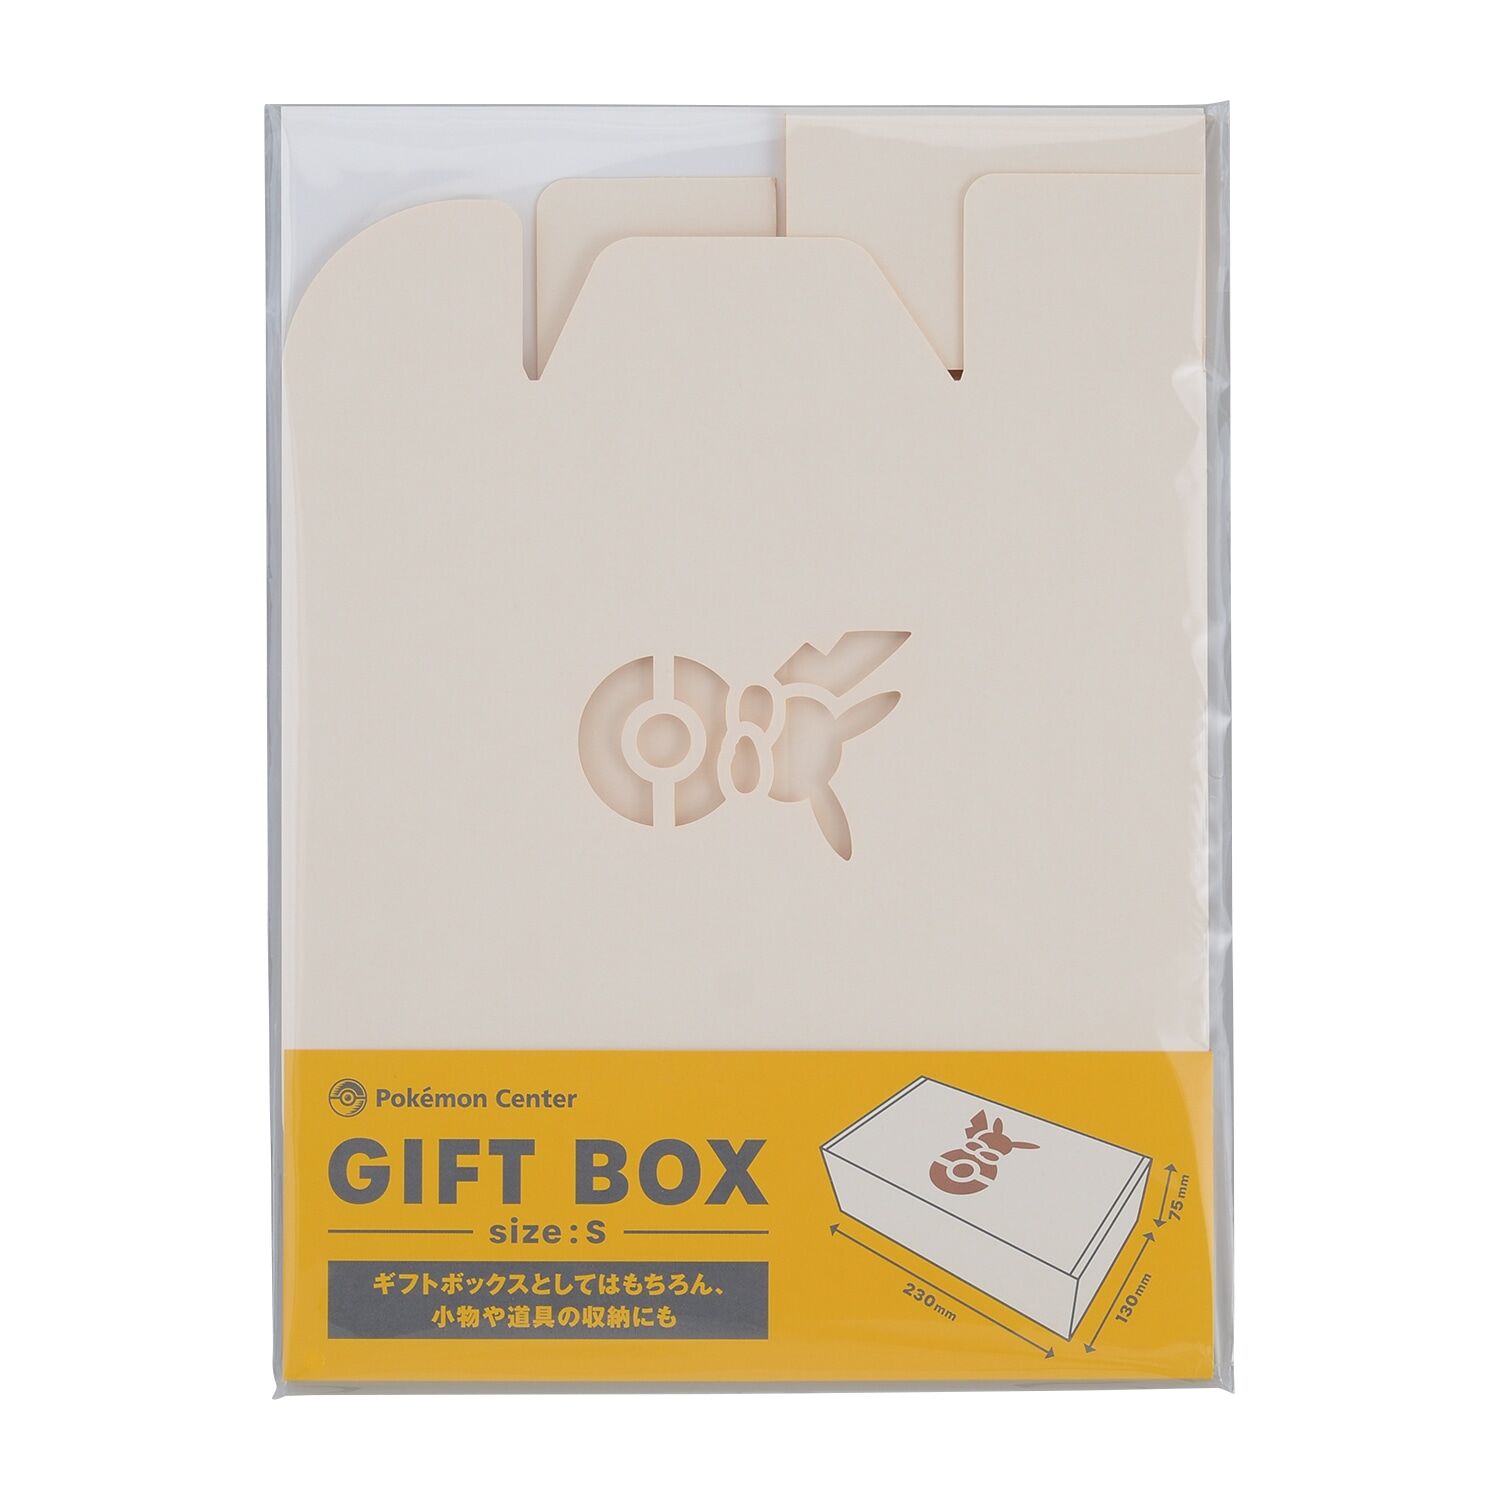 Pokémon Center Original Gift Box S